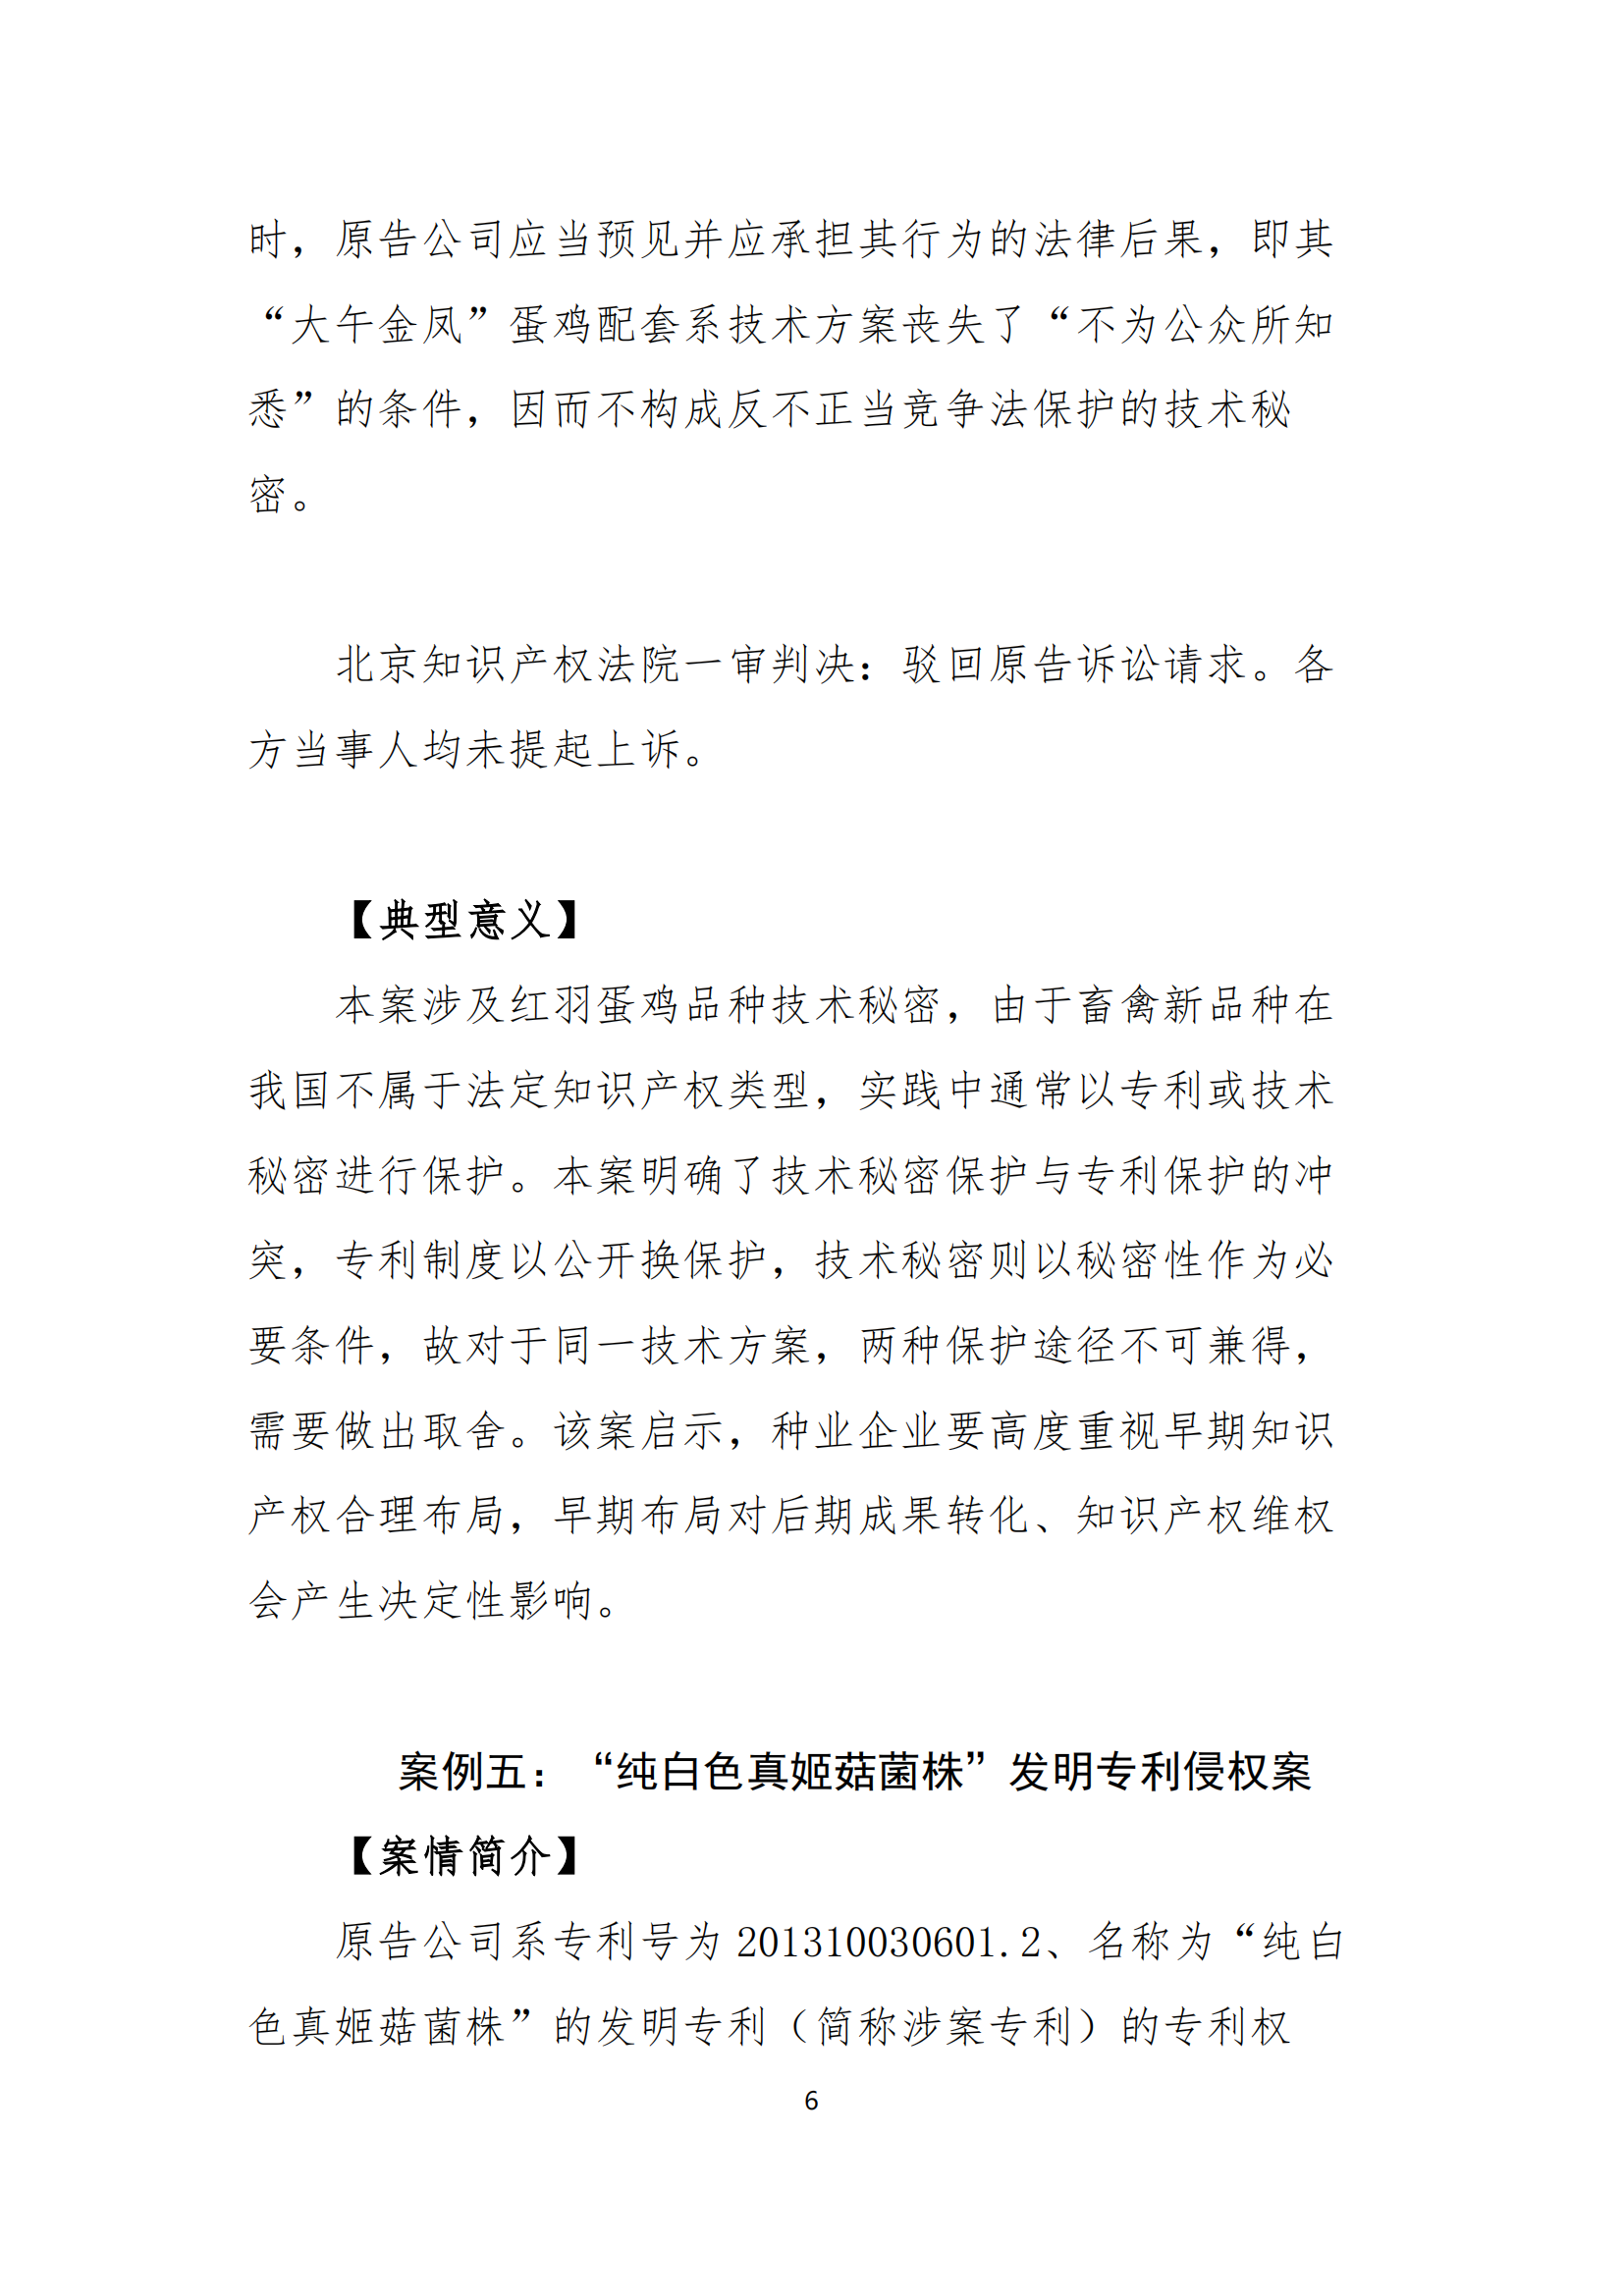 北京知识产权法院发布种业知识产权典型案例